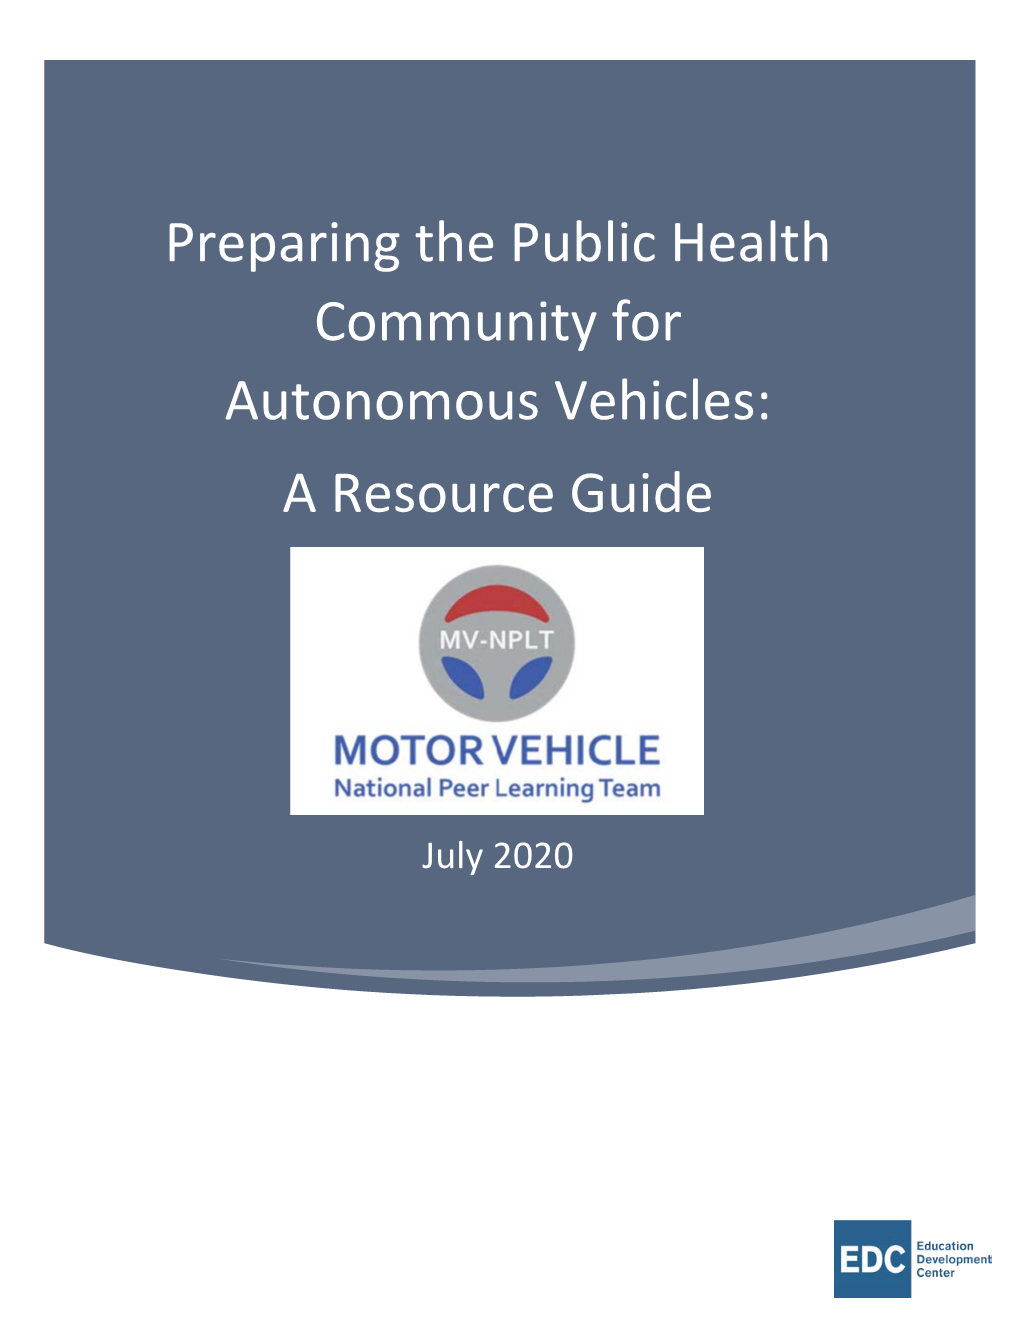 Preparing the Public Health Community for Autonomous Vehicles: a Resource Guide